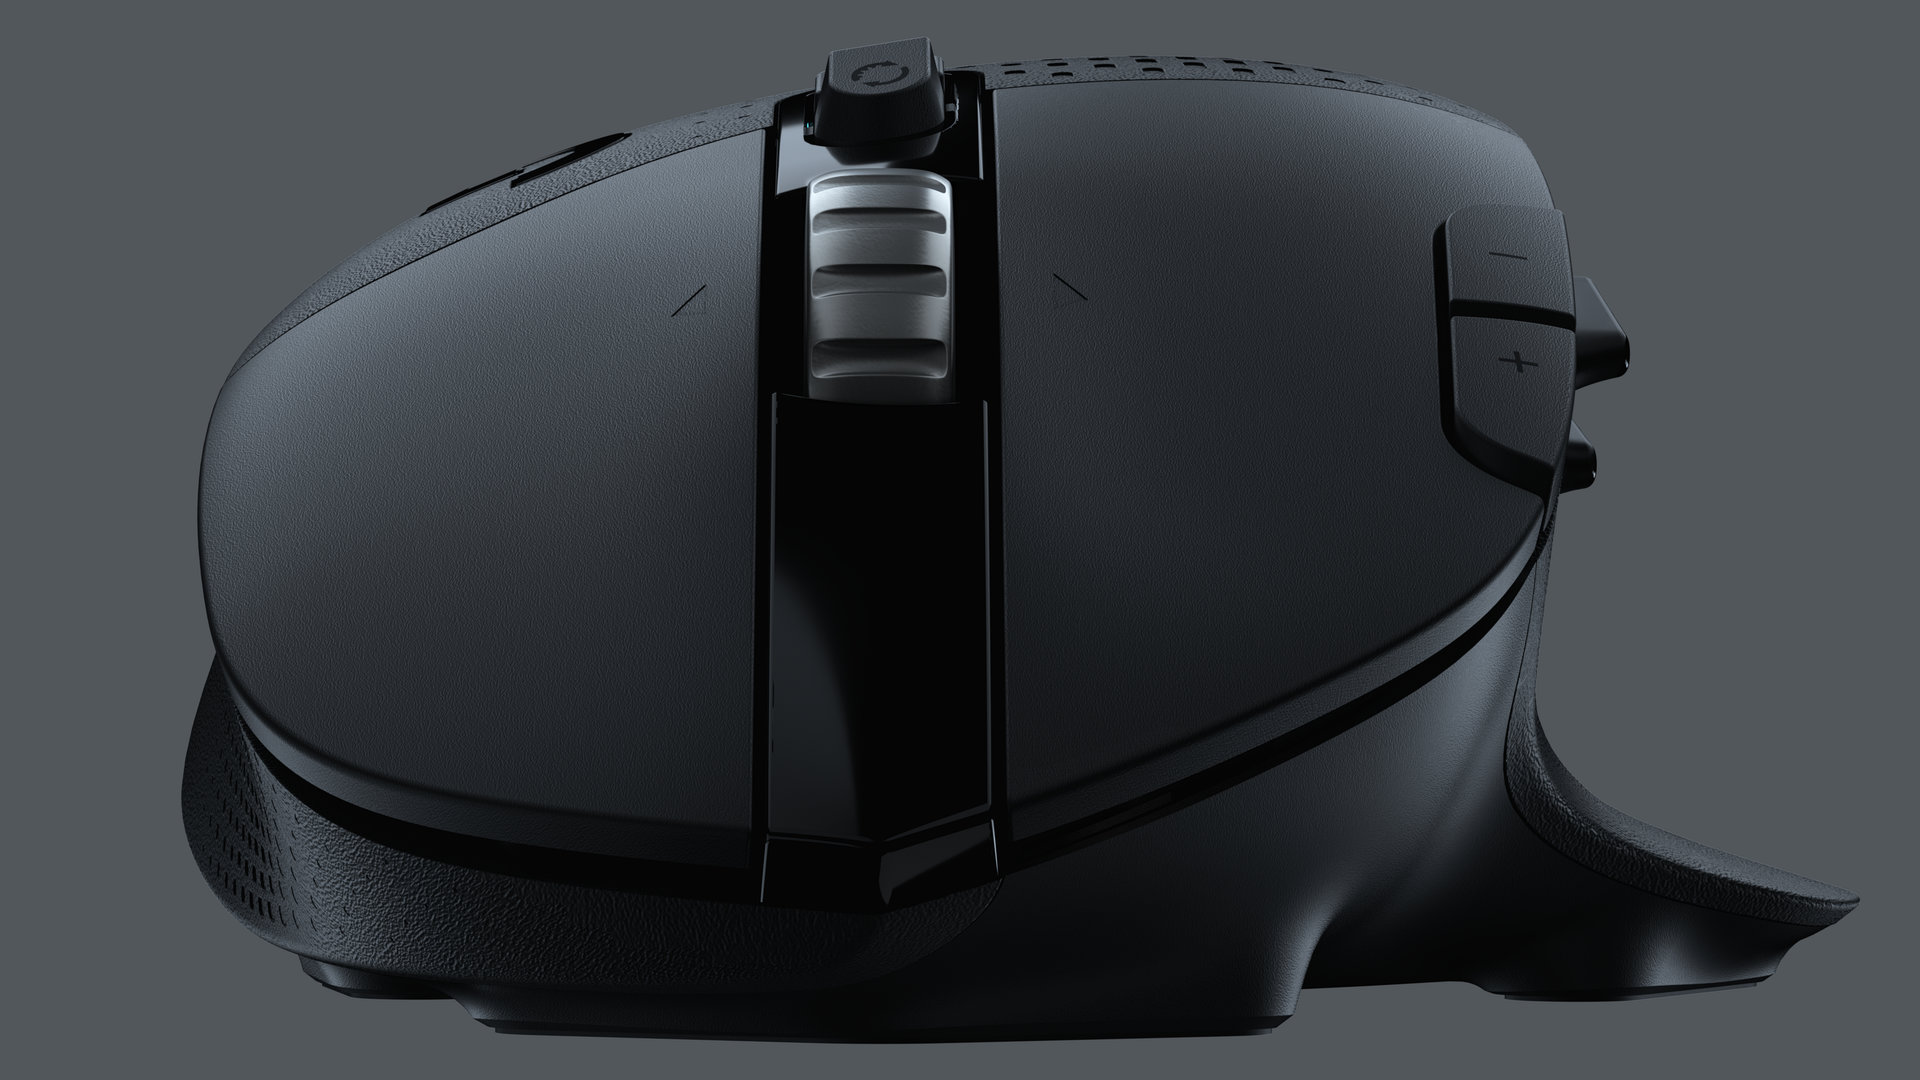 Image 6 : G604 Lightspeed : la nouvelle souris gaming sans fil de Logitech pour les MMO